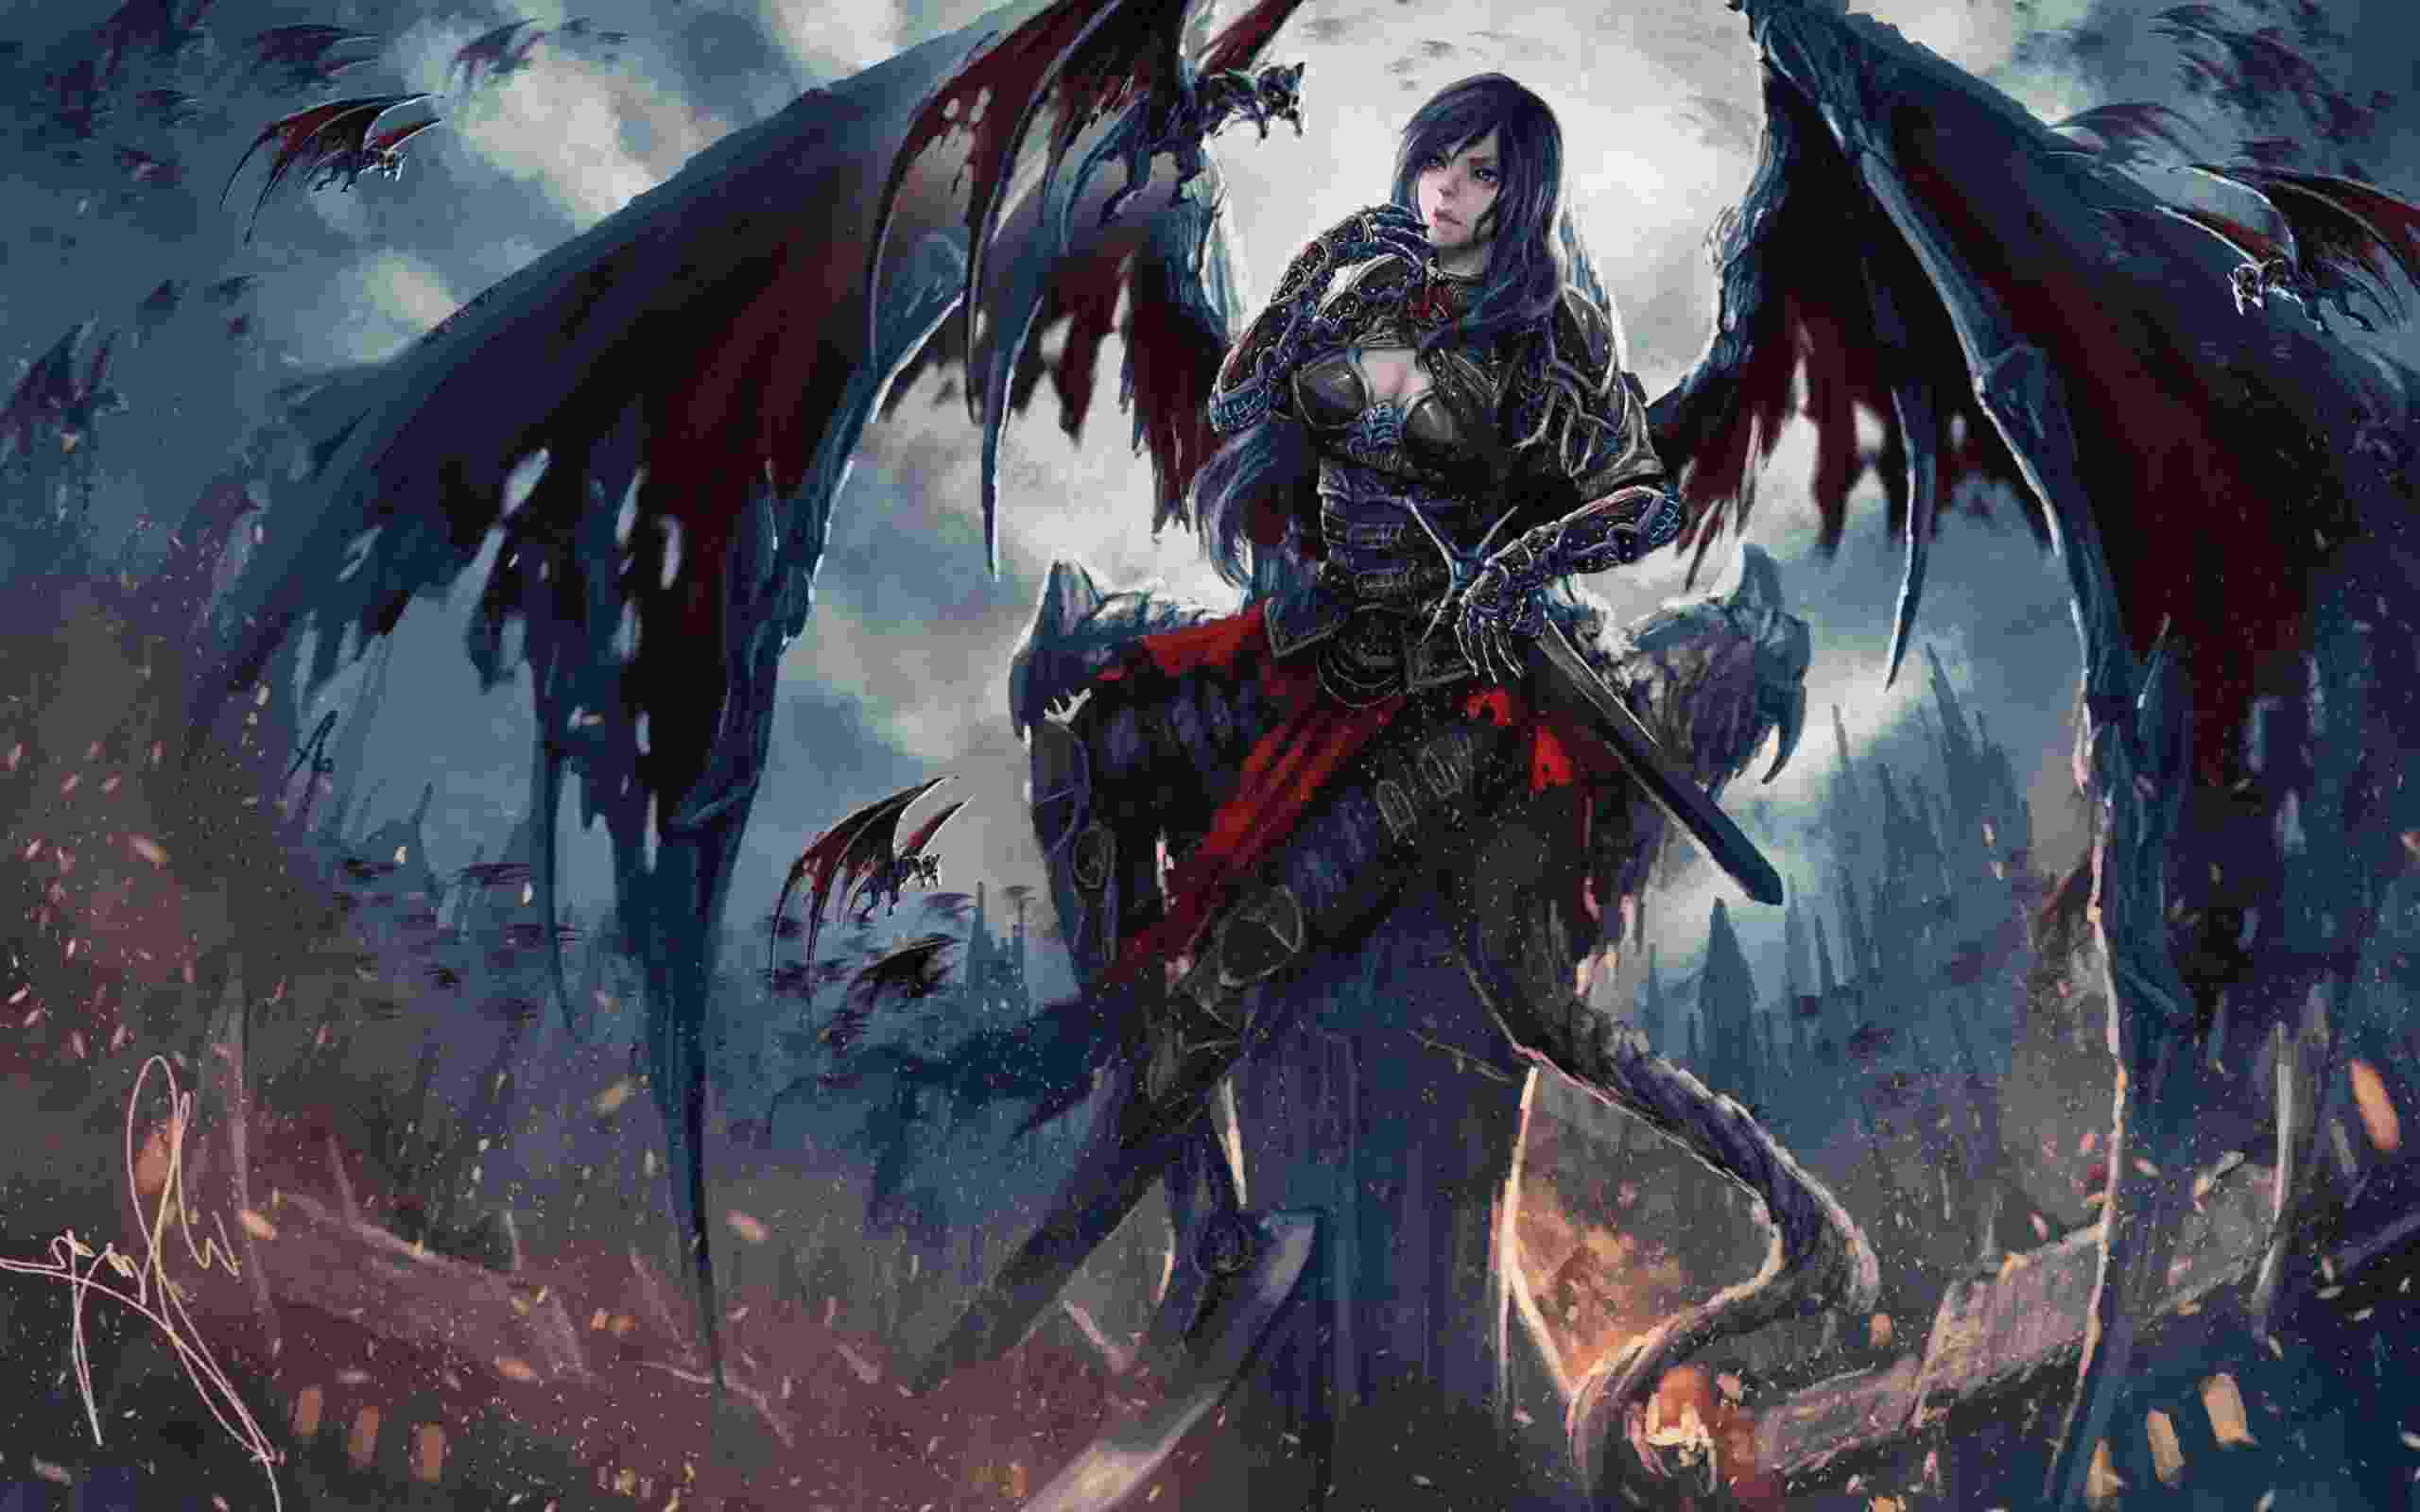 Evil Fantasy Art - HD Wallpaper 